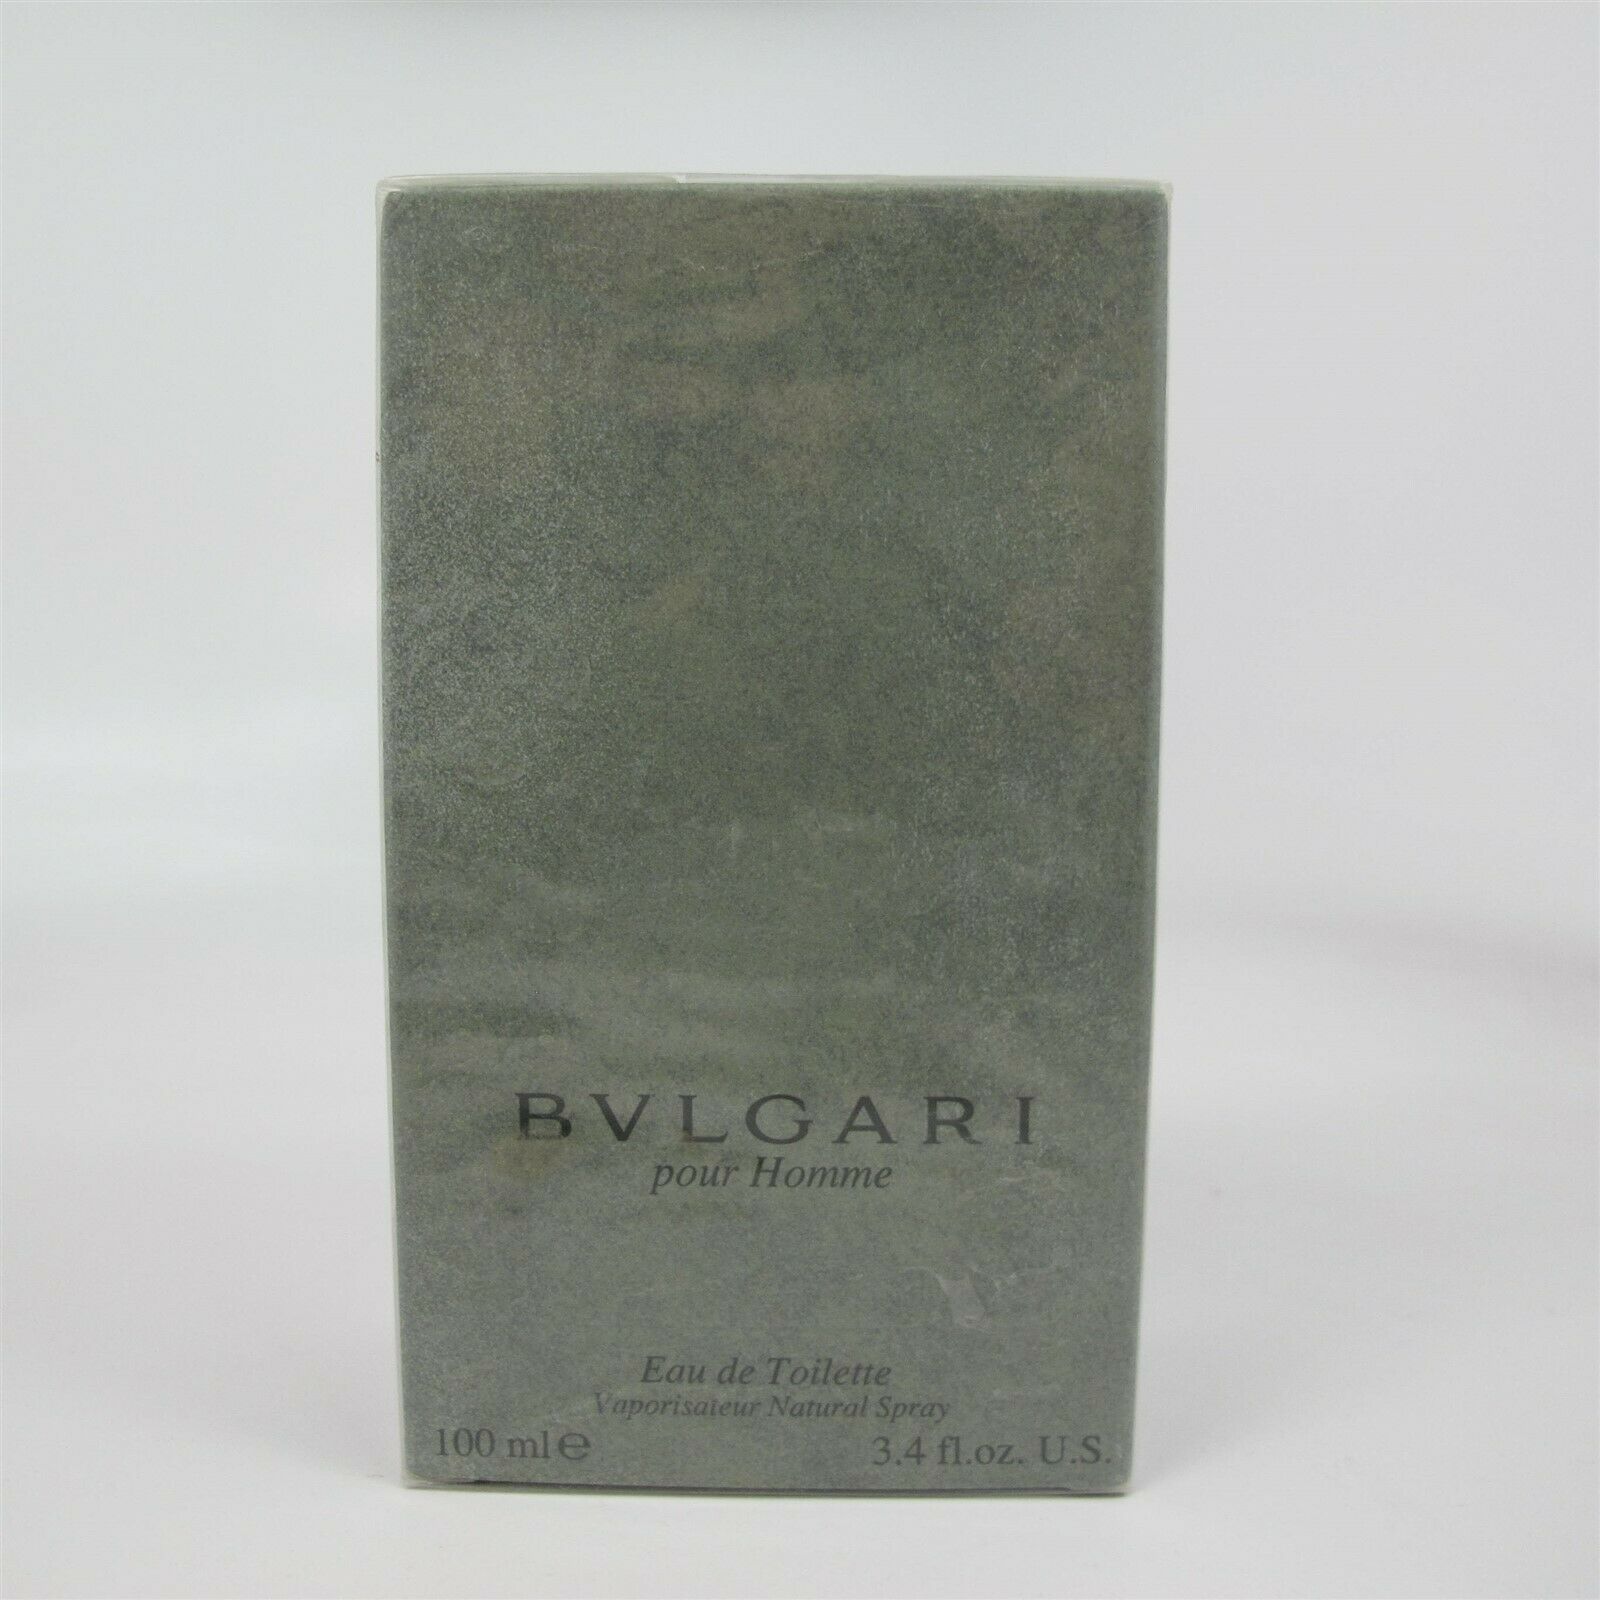 BVLGARI Pour Homme by Bvlgari 100 ml/3.4 oz EDT Spray NIB VINTAGE (YEAR 2001) - $287.09